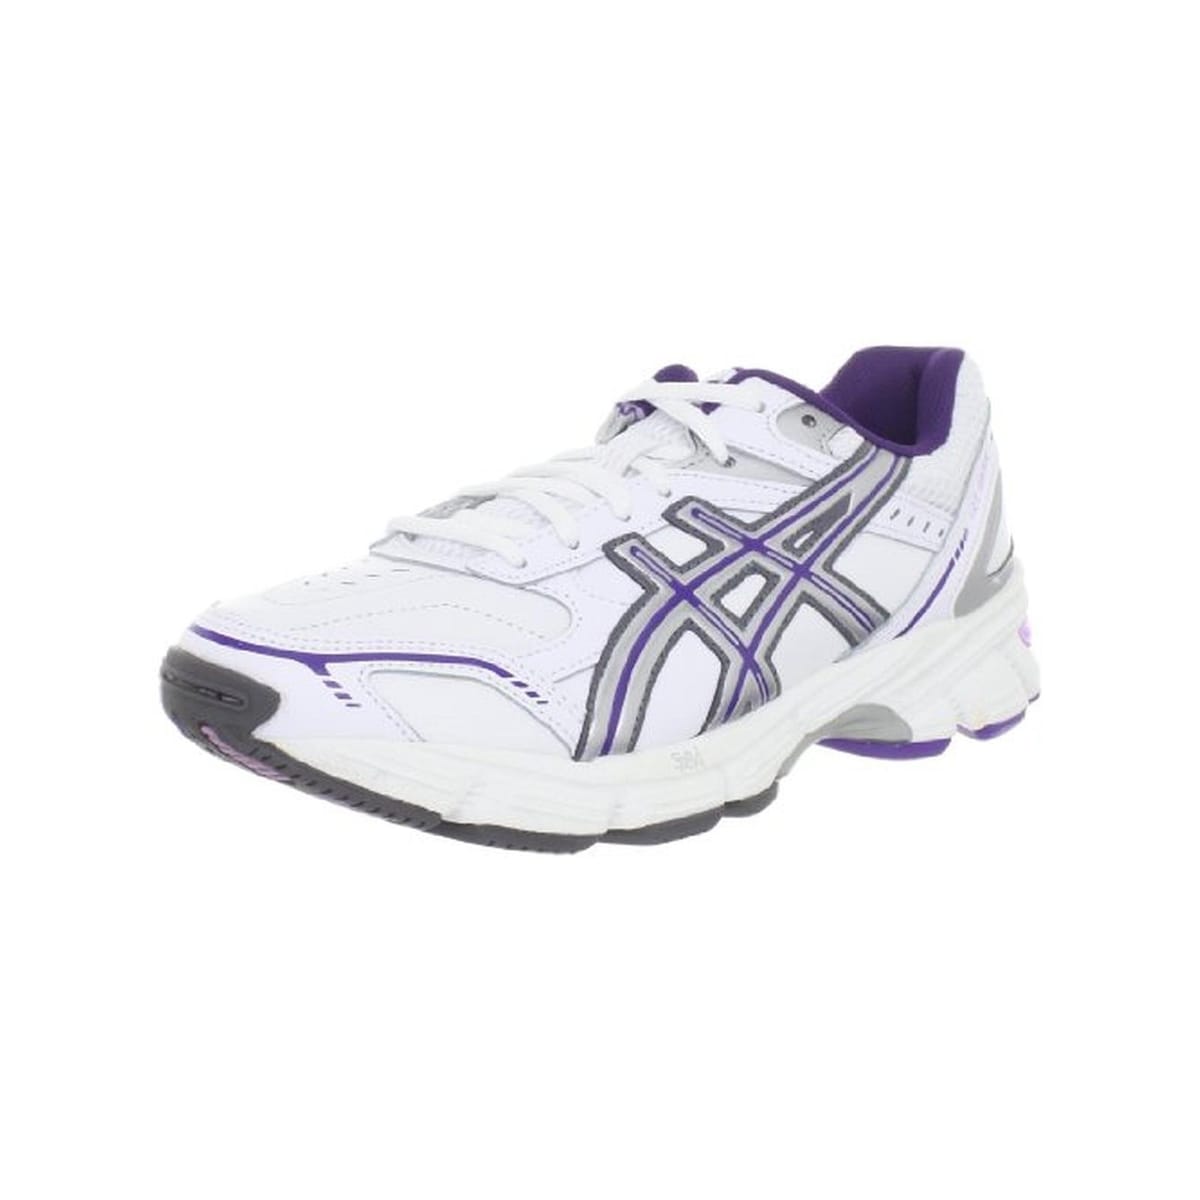 asics women's gel 180 tr running shoe